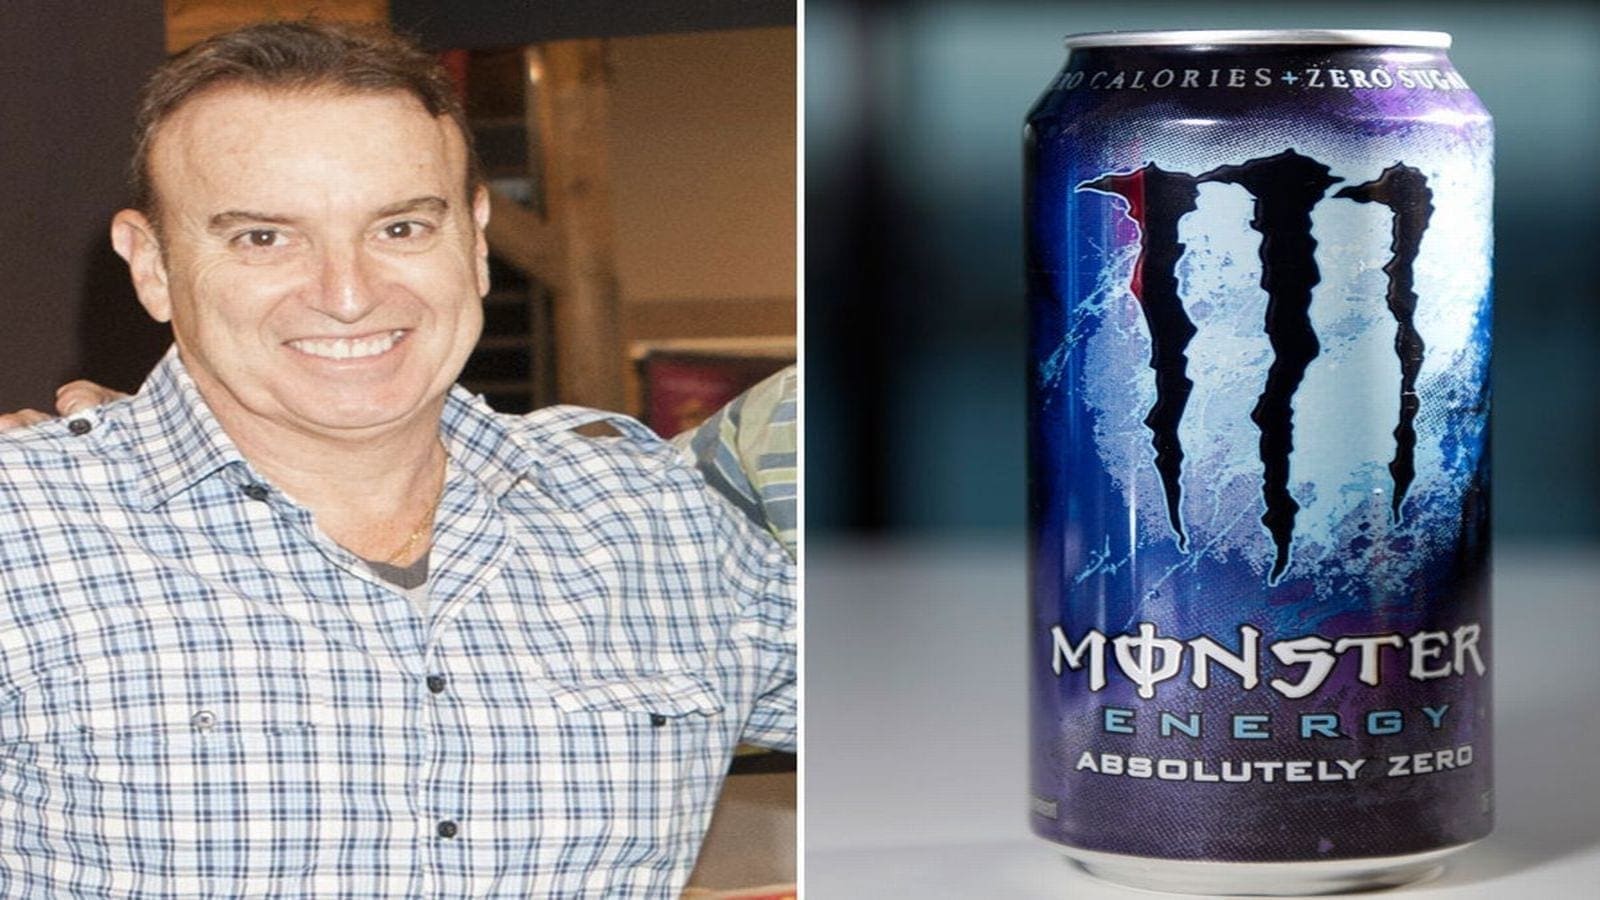 Monster Beverage names long-term CFO Hilton Hilton Schlosberg as co-CEO